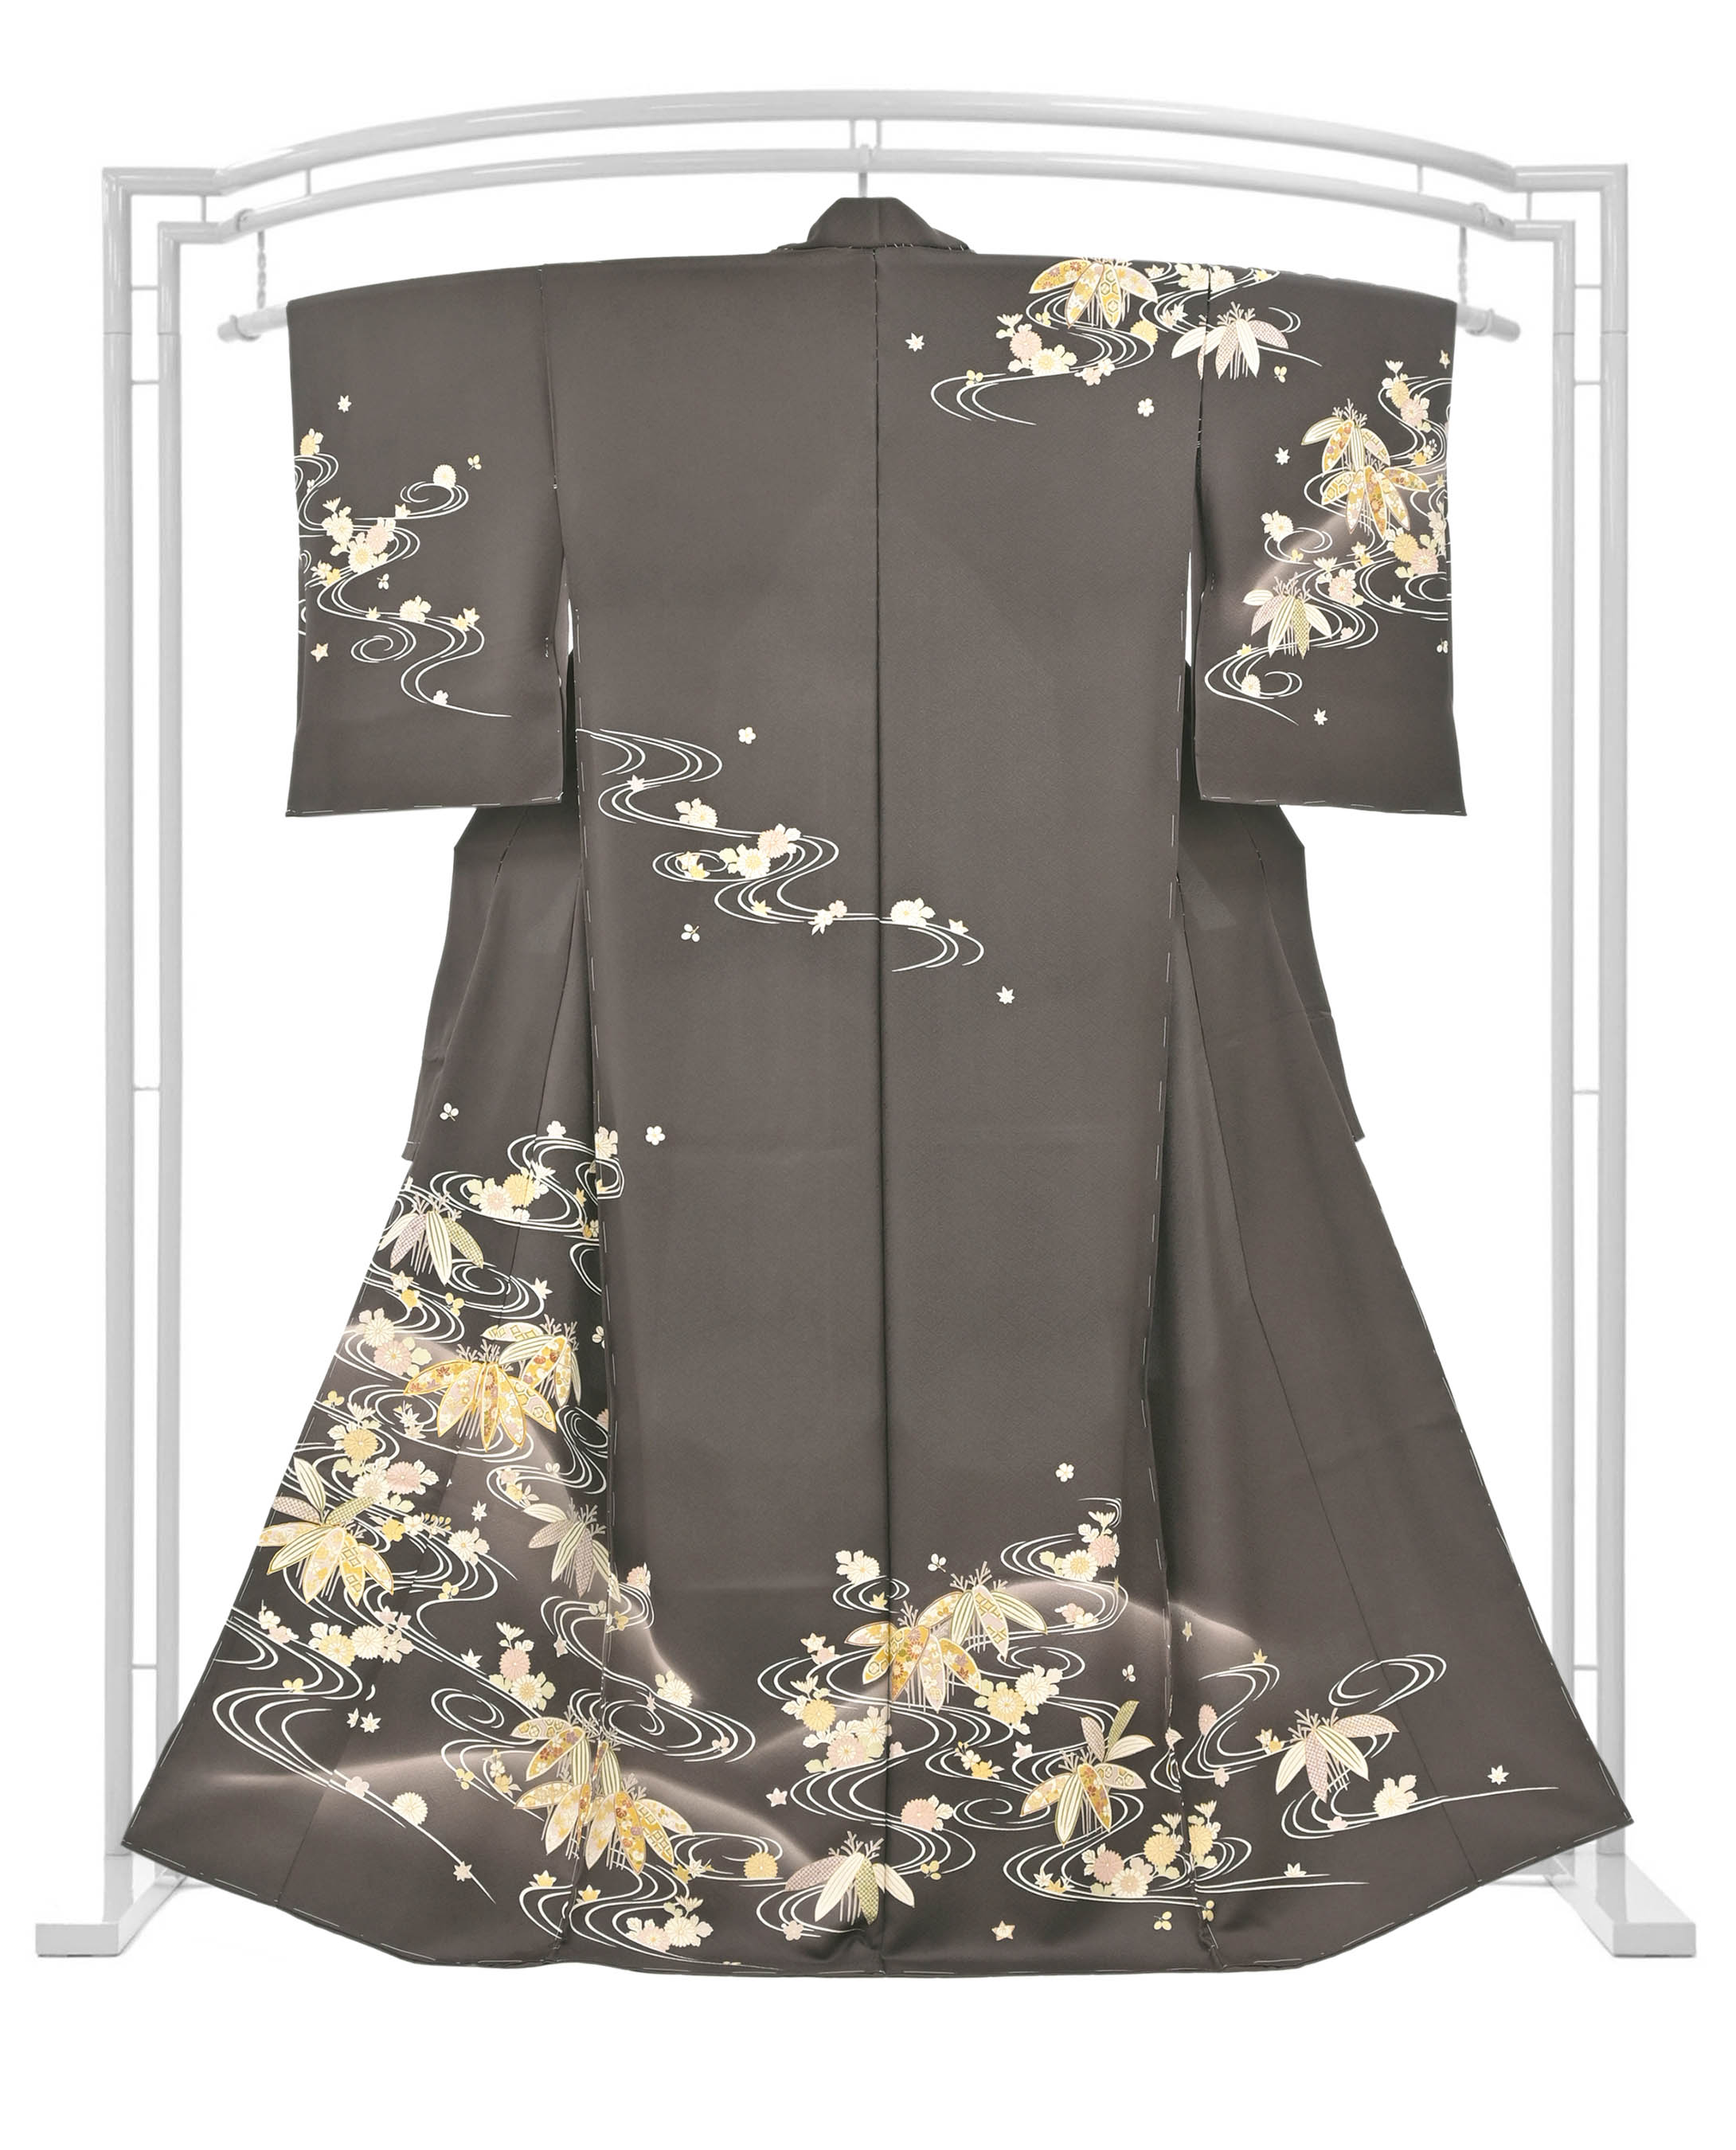 久保耕の着物・帯の一覧|京都きもの市場【日本最大級の着物通販サイト】